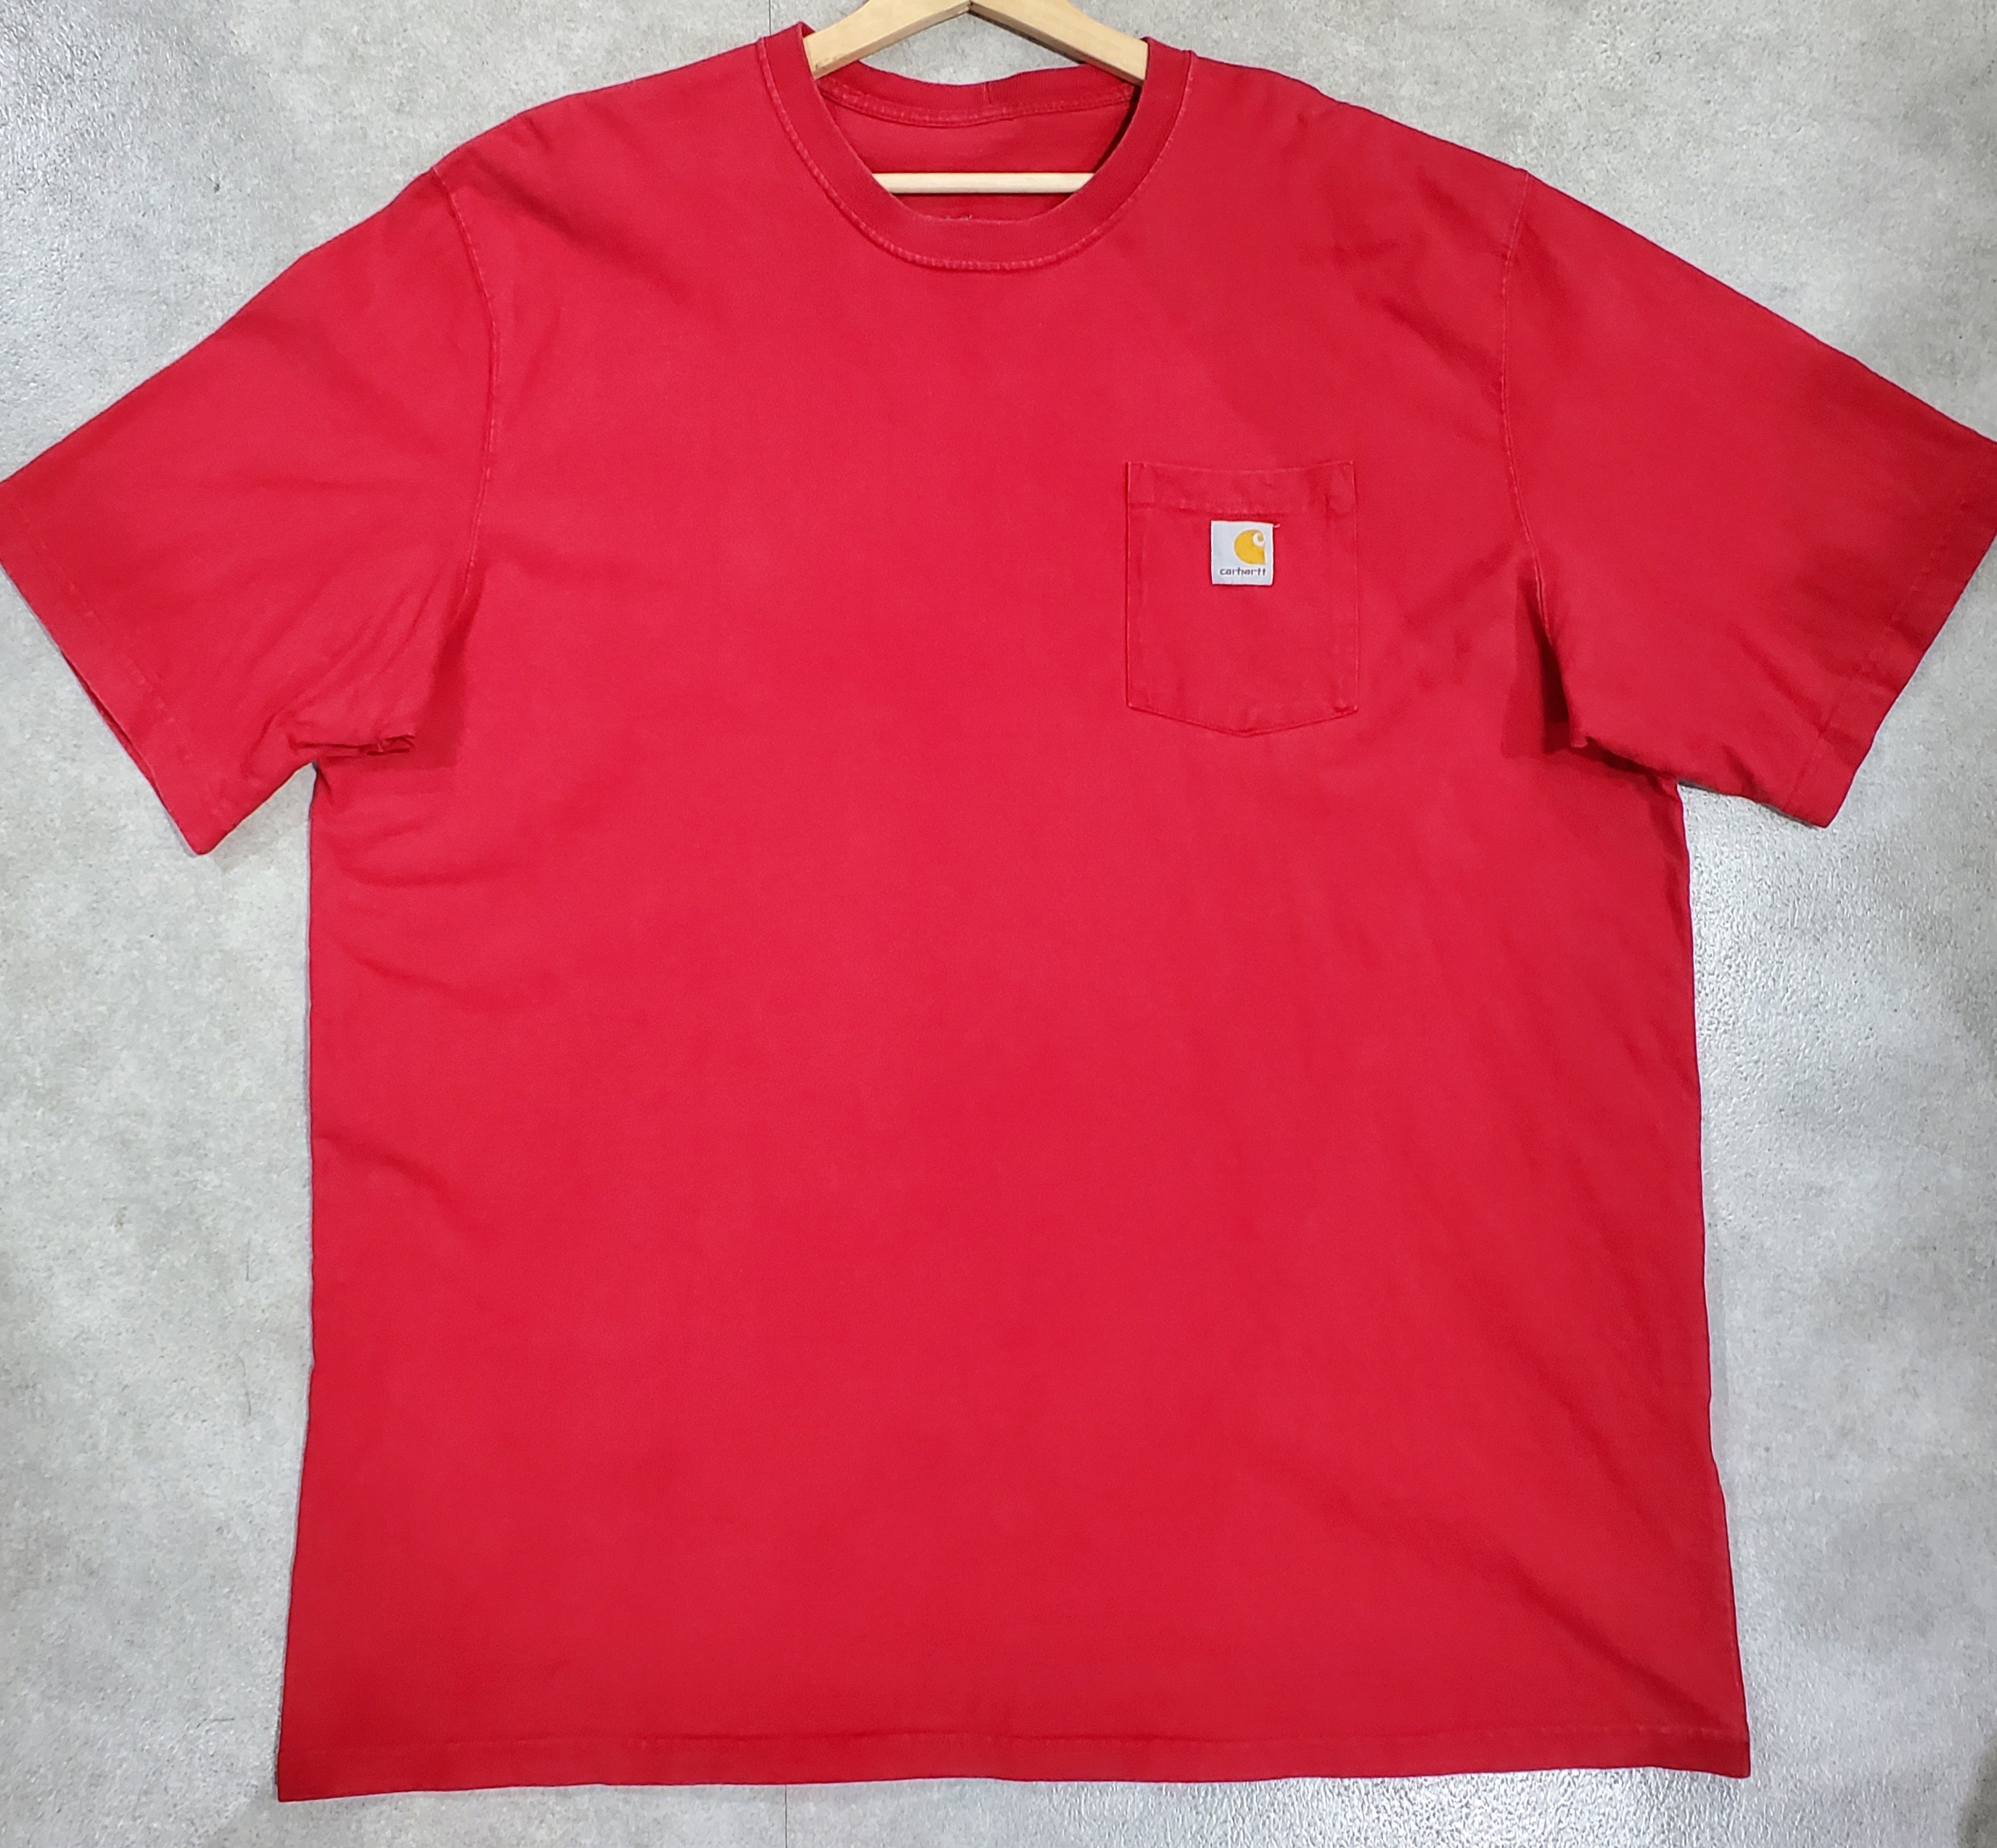 carhartt カーハート メキシコ製赤ロゴティーシャツt shirtsポケット